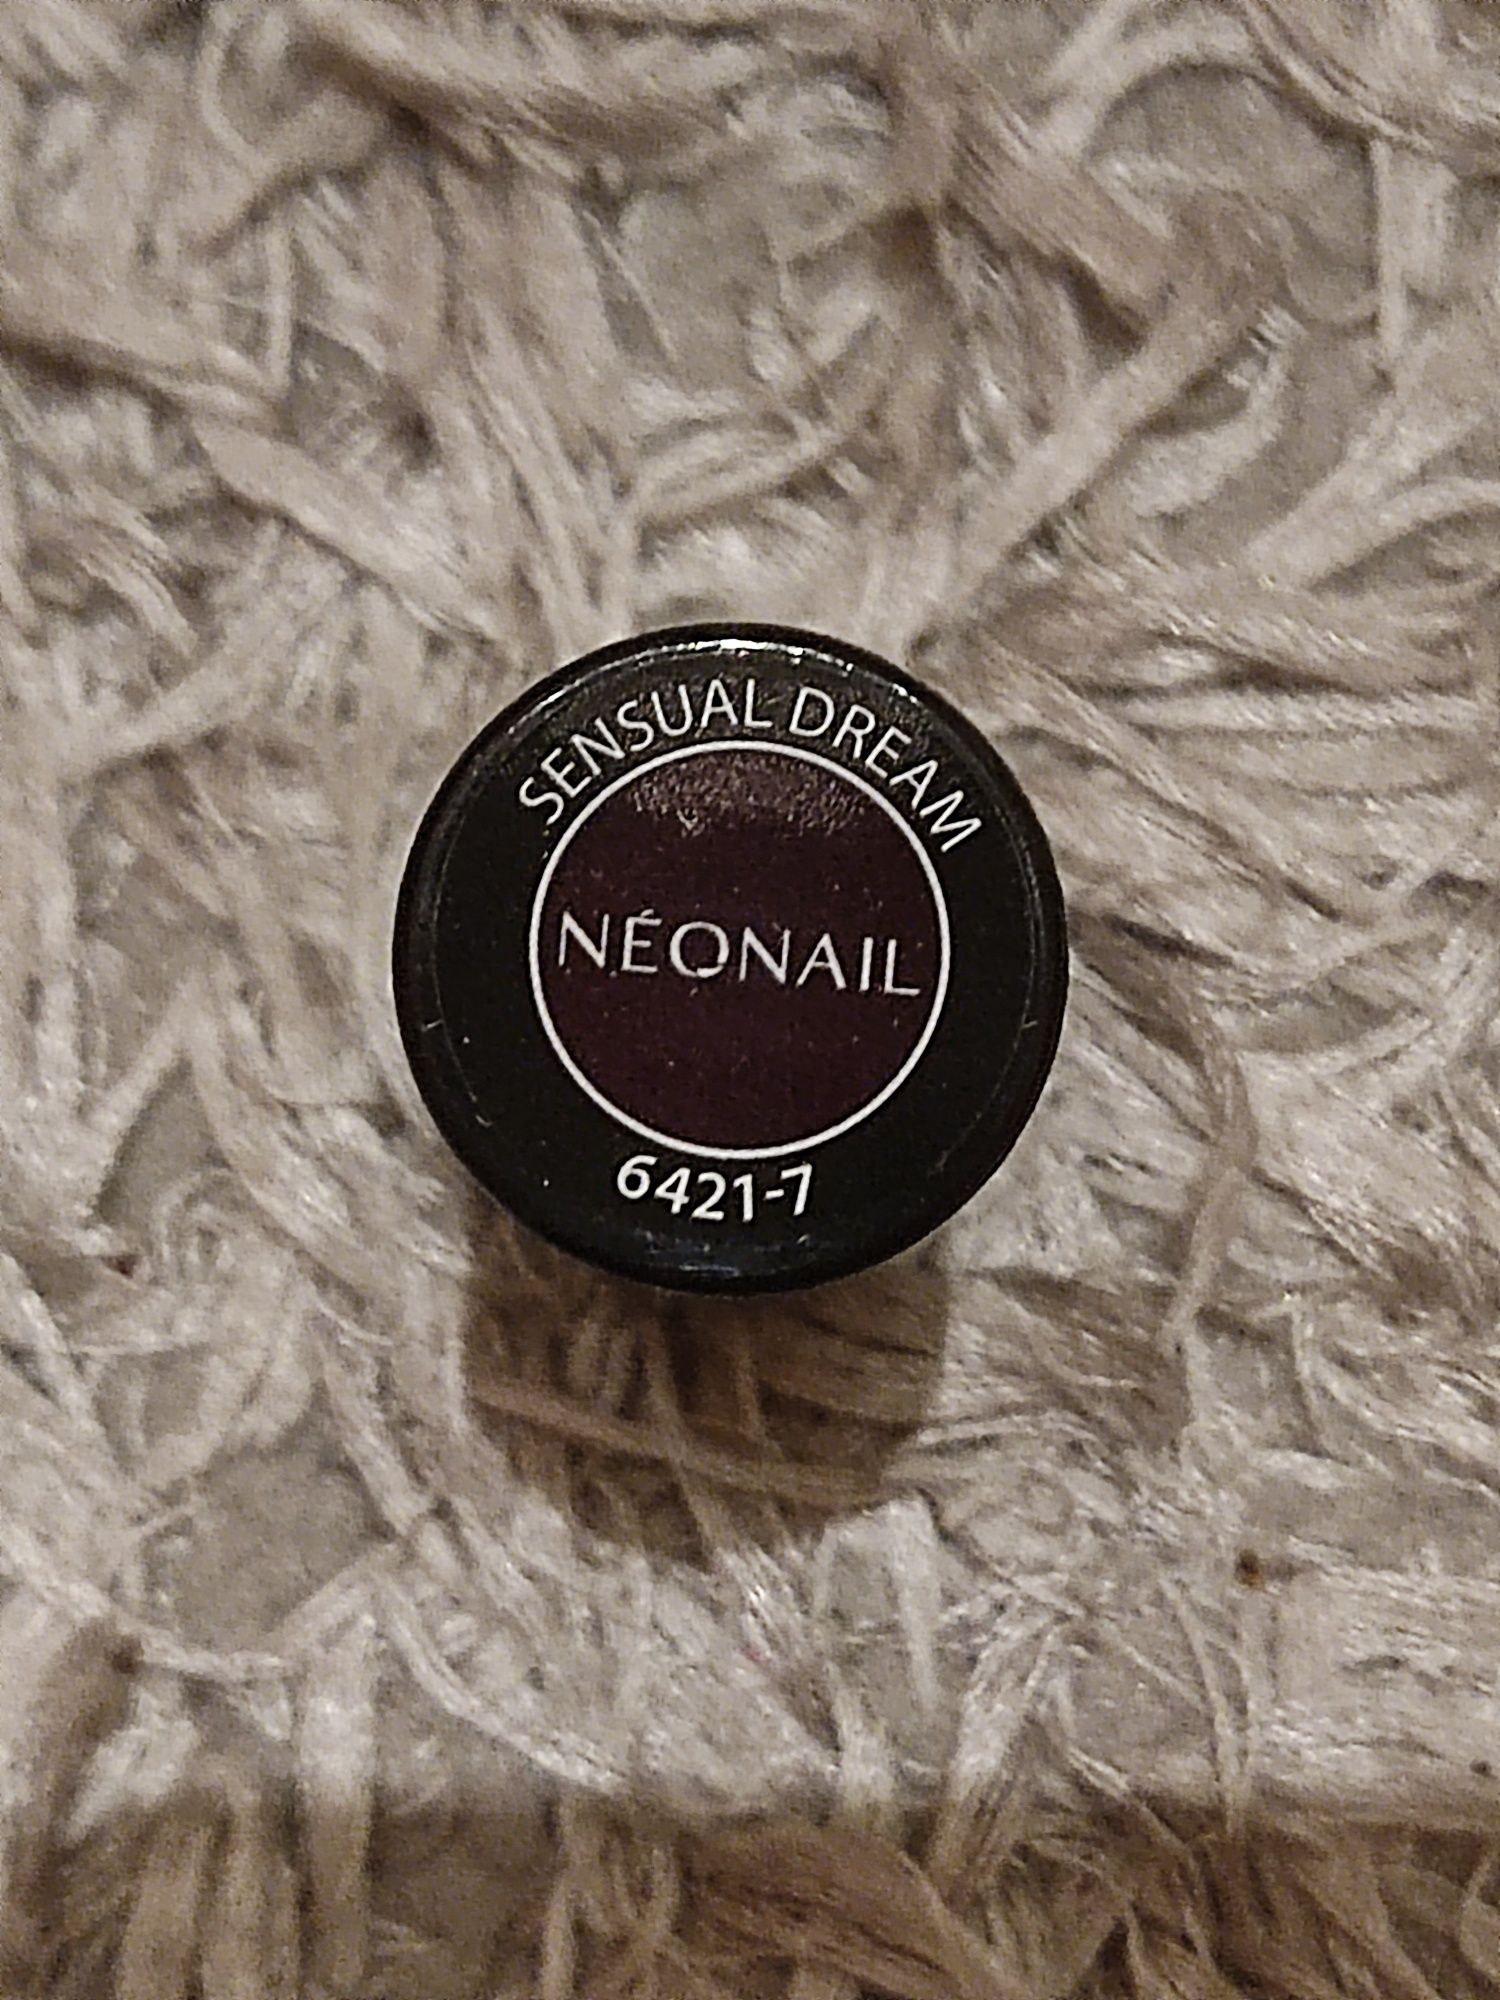 Nowy lakier hybrydowy neonail sensual dream 6421-7 manicure pedicure